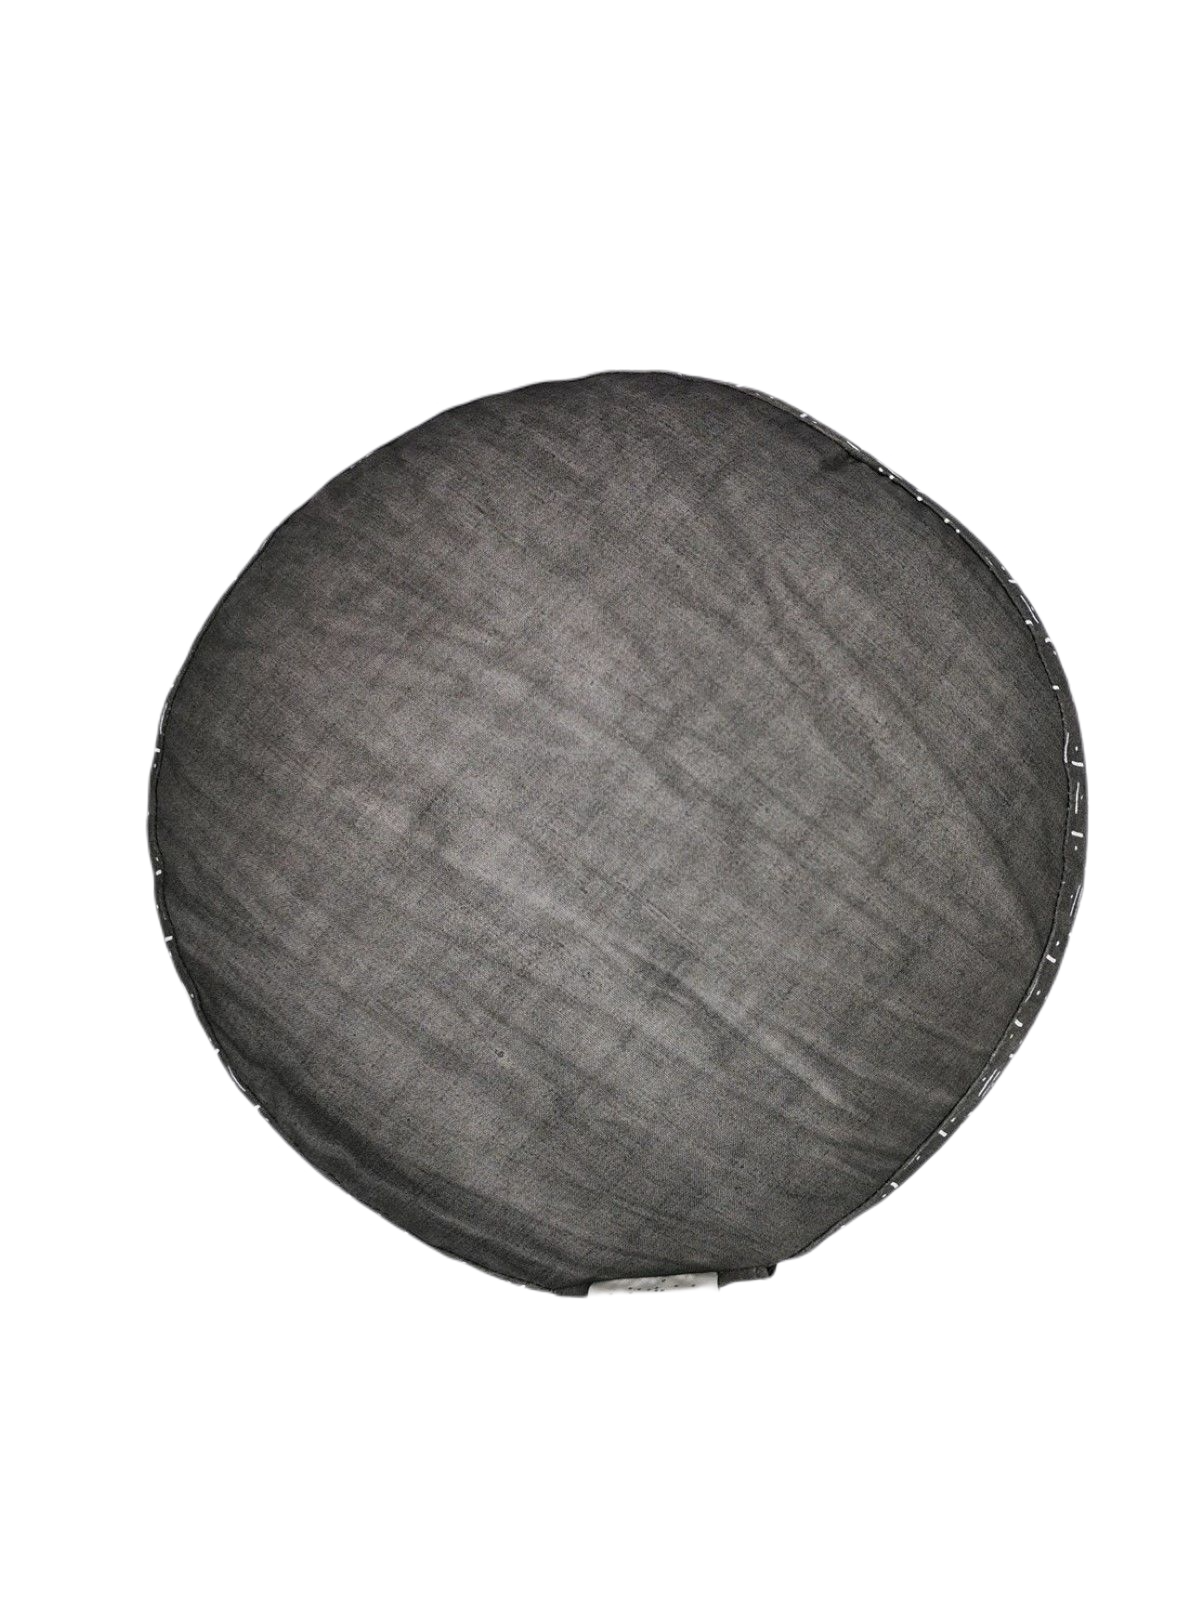 Meditationskissen rund, grau/natur 30x16cm